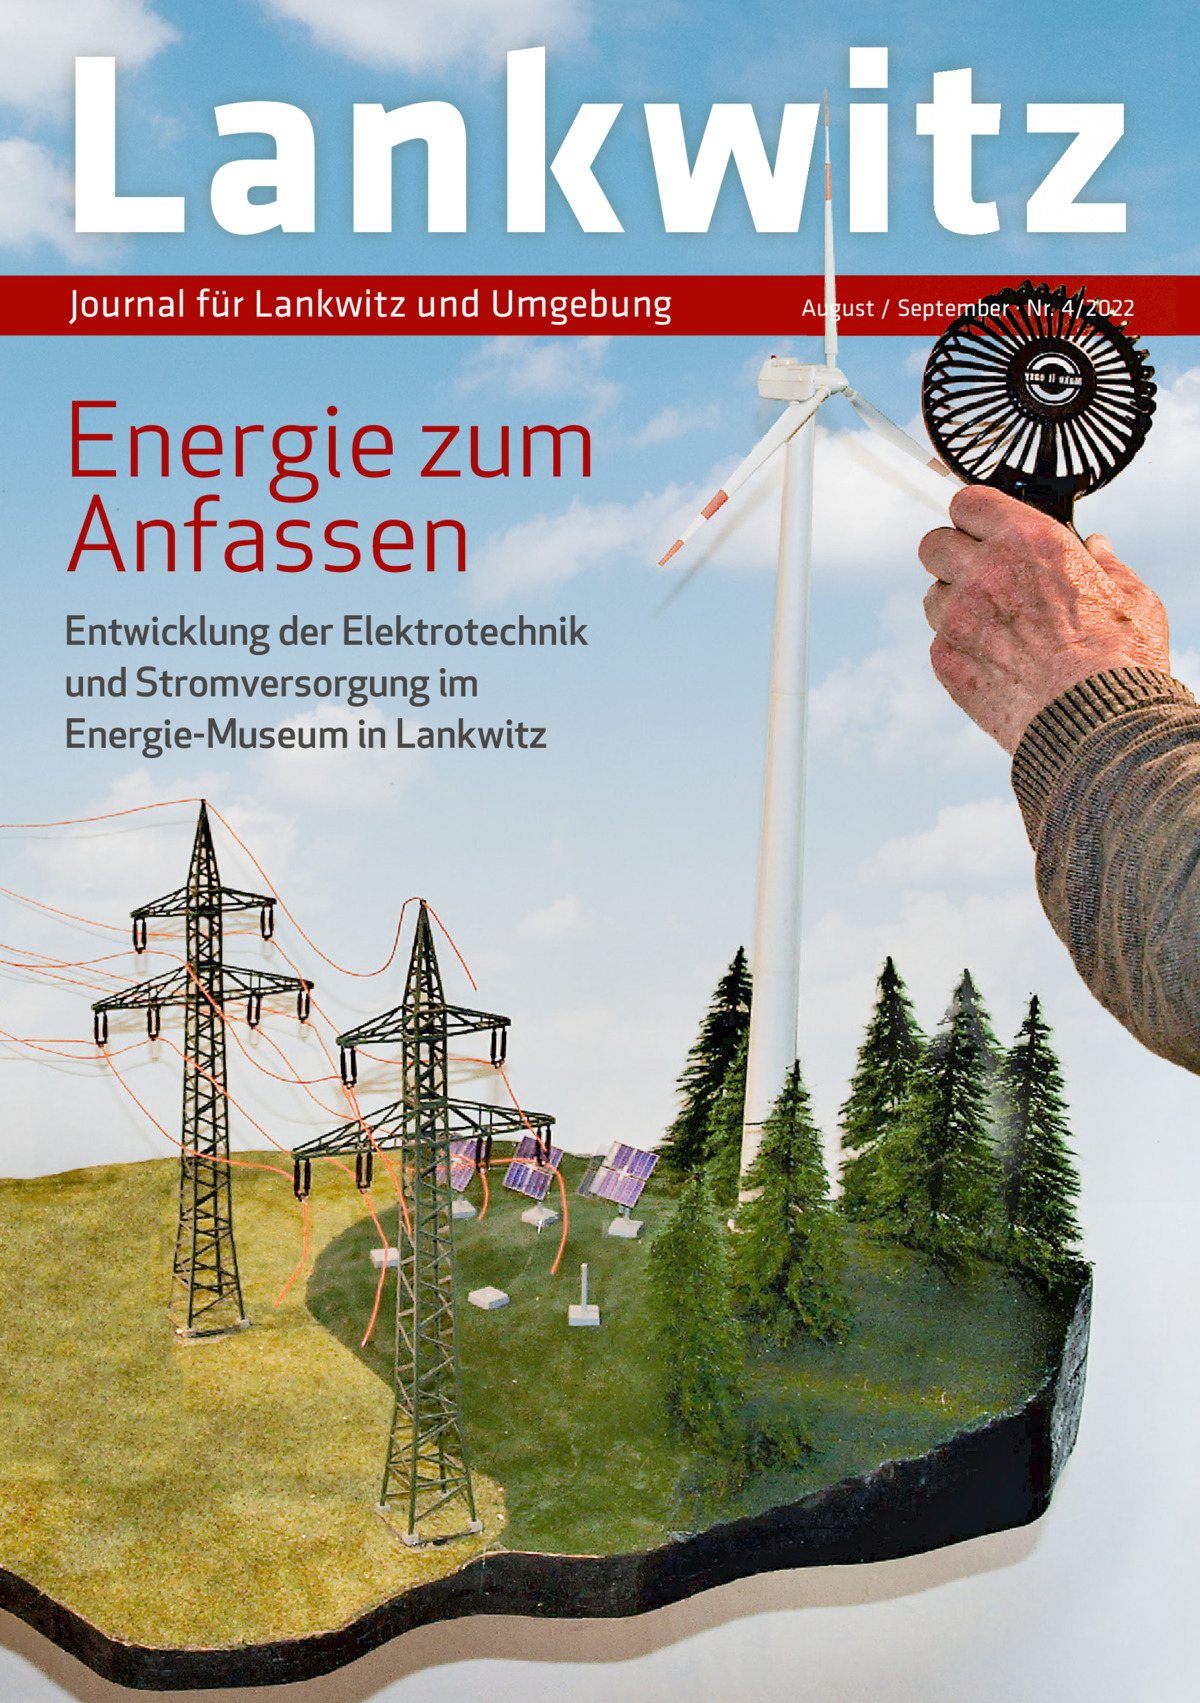 Lankwitz Journal für Lankwitz und Umgebung  Energie zum Anfassen Entwicklung der Elektrotechnik und Stromversorgung im Energie-Museum in Lankwitz  August / September · Nr. 4/2022